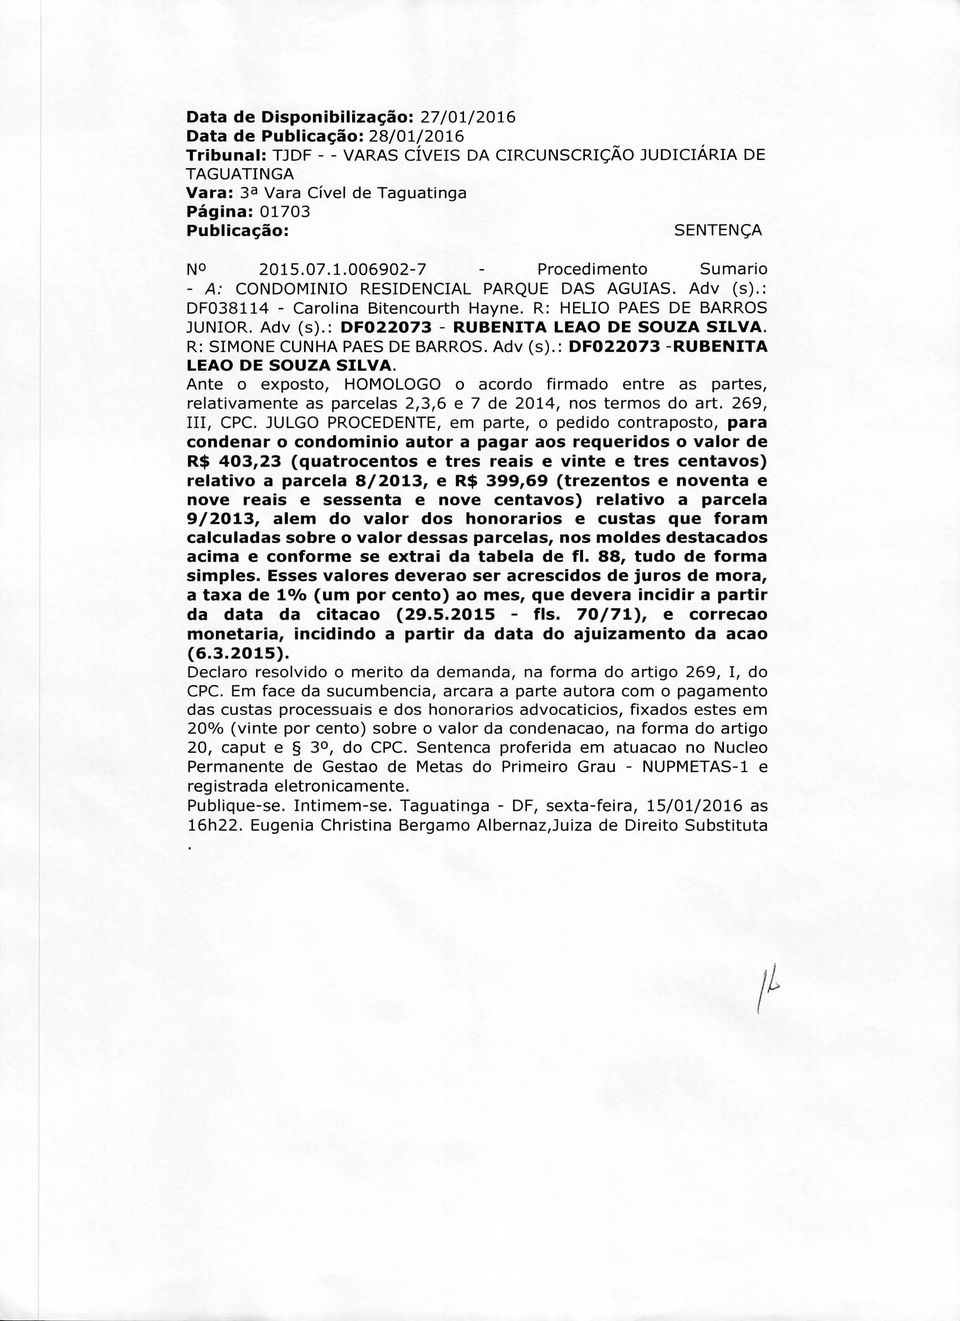 R: SIMONE CUNHA PAES DE BARROS. Adv (s).: DF022073 -RUBENITA LEAO DE SOUZA SILVA.